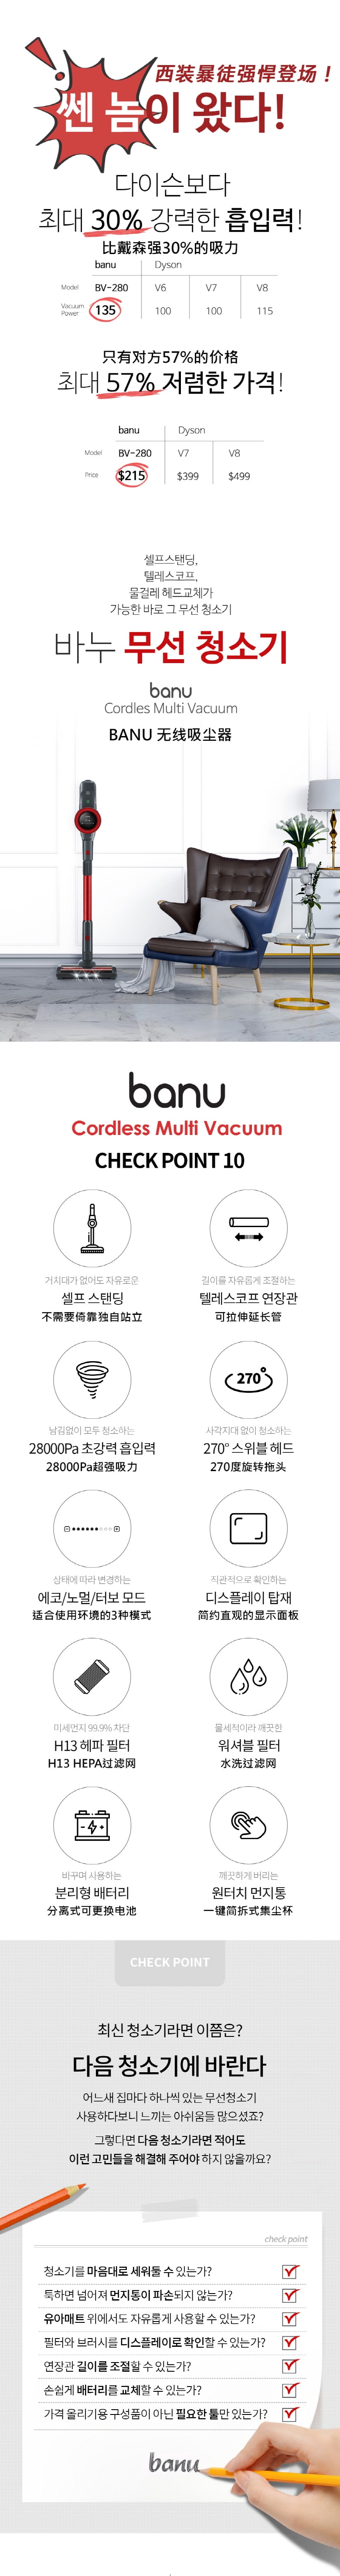 韩国 BANU 强力手持式吸尘器 比戴森更强 28 Kpa (可选拖把头)